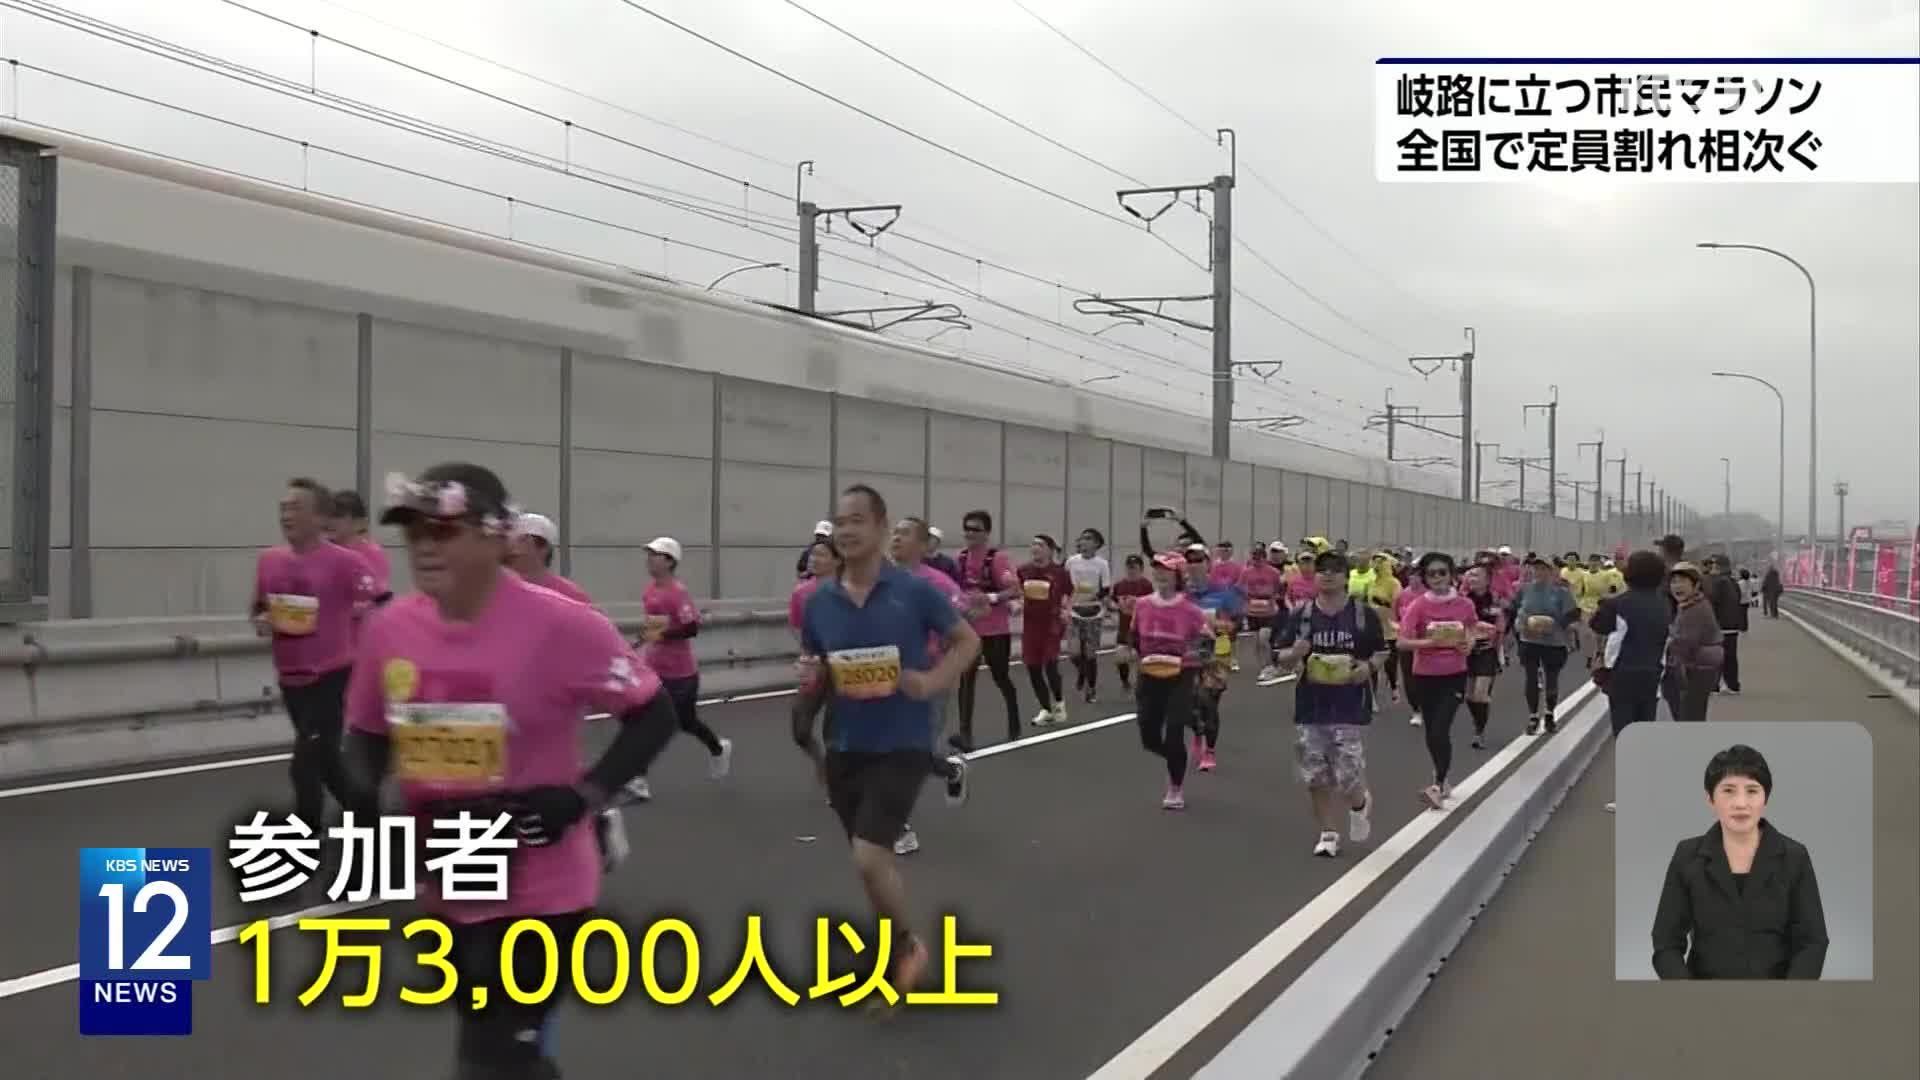 일본, 지자체 시민 마라톤 대회 정원 미달 잇따라